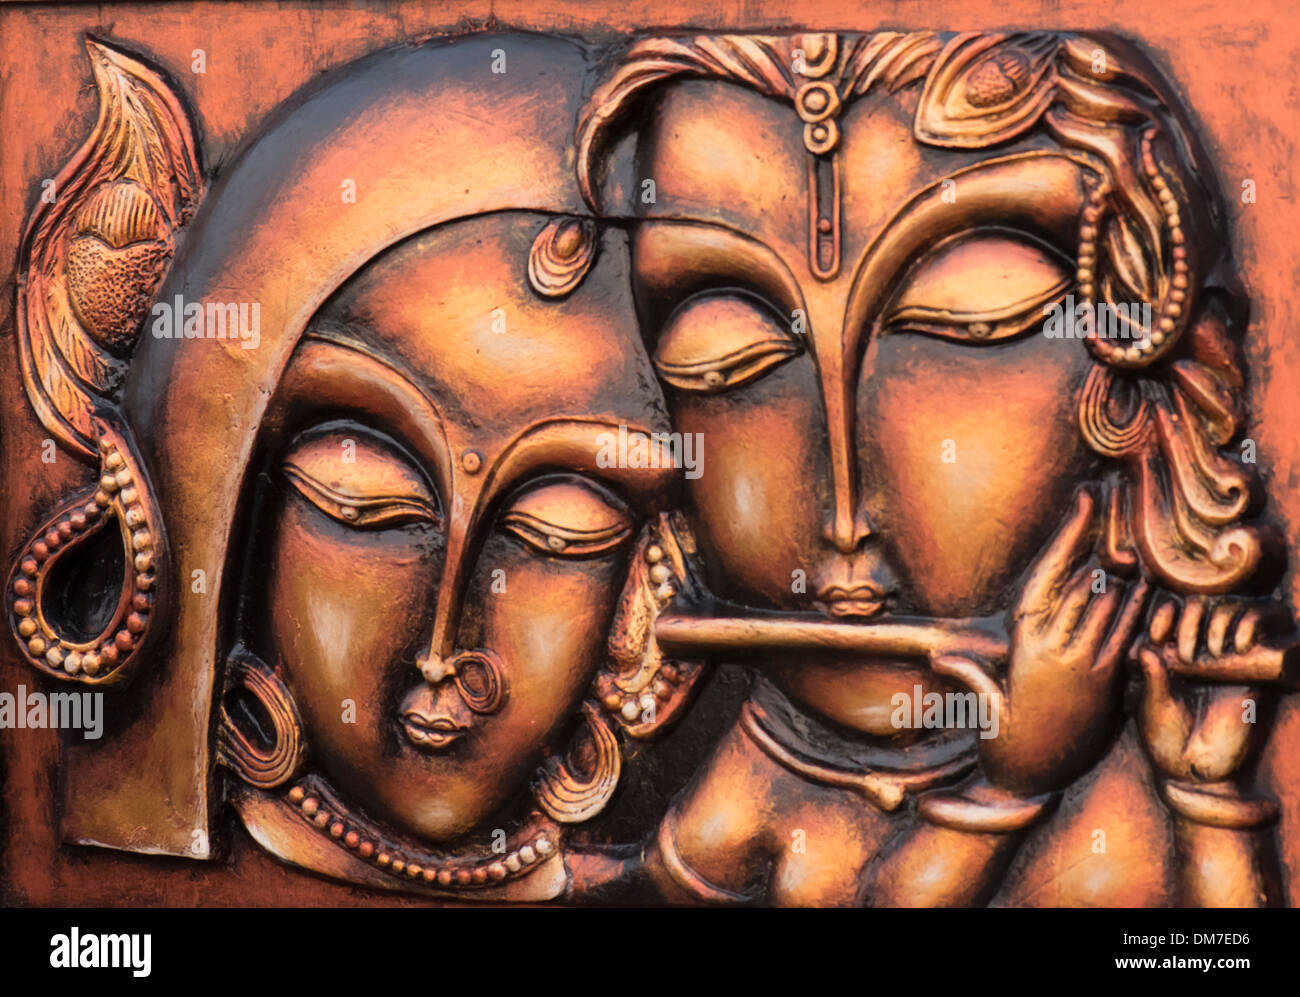 Imagen de terracota de Lord Krishna y Radha - su consorte. Foto de stock